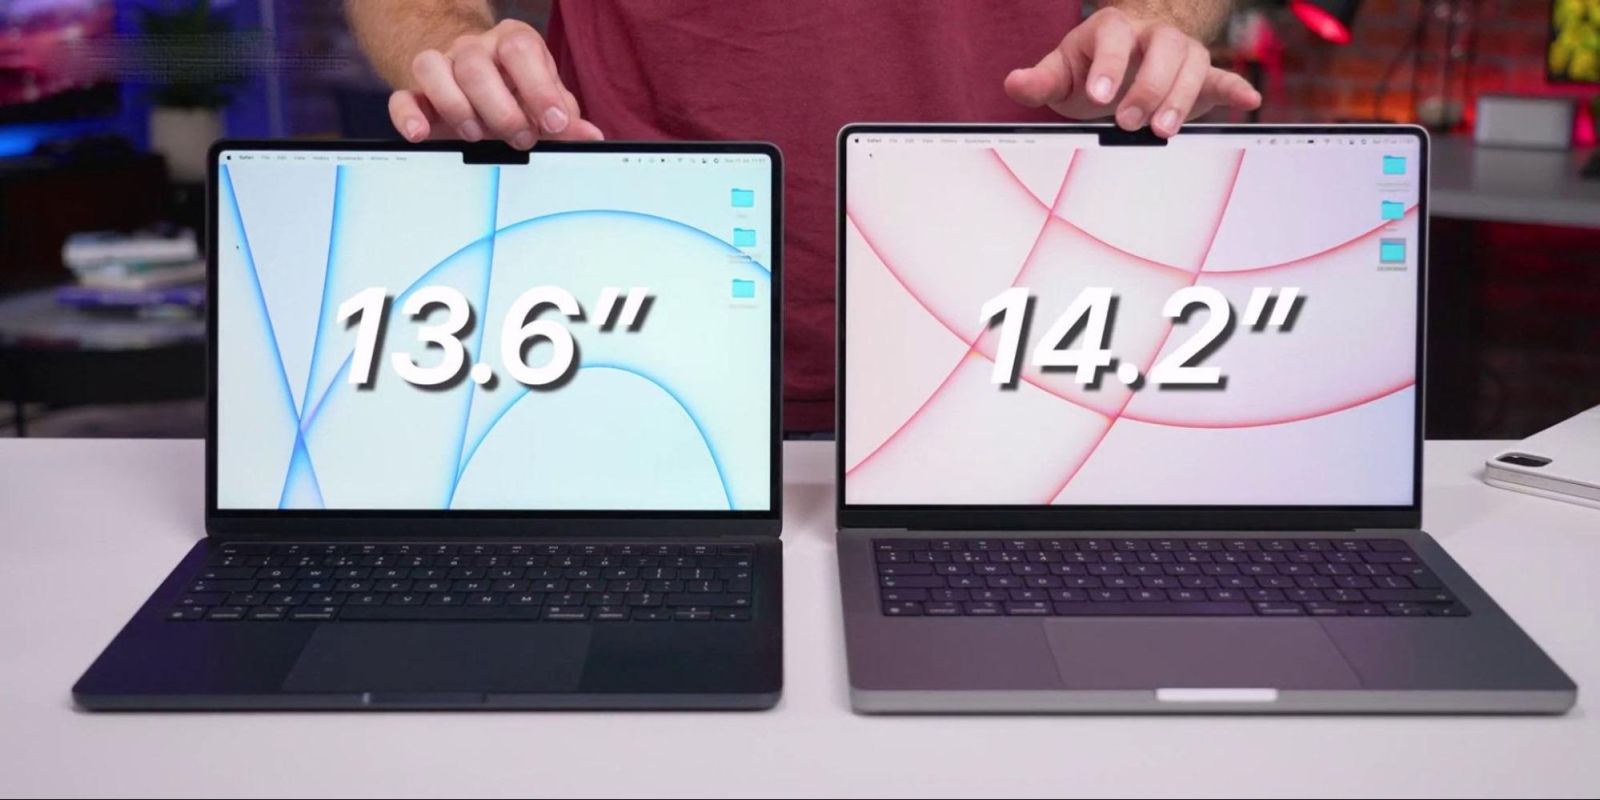 MacBook Pro hướng đến những đối tượng người dùng chuyên nghiệp nên có nhiều tùy chọn về kích thước hơn